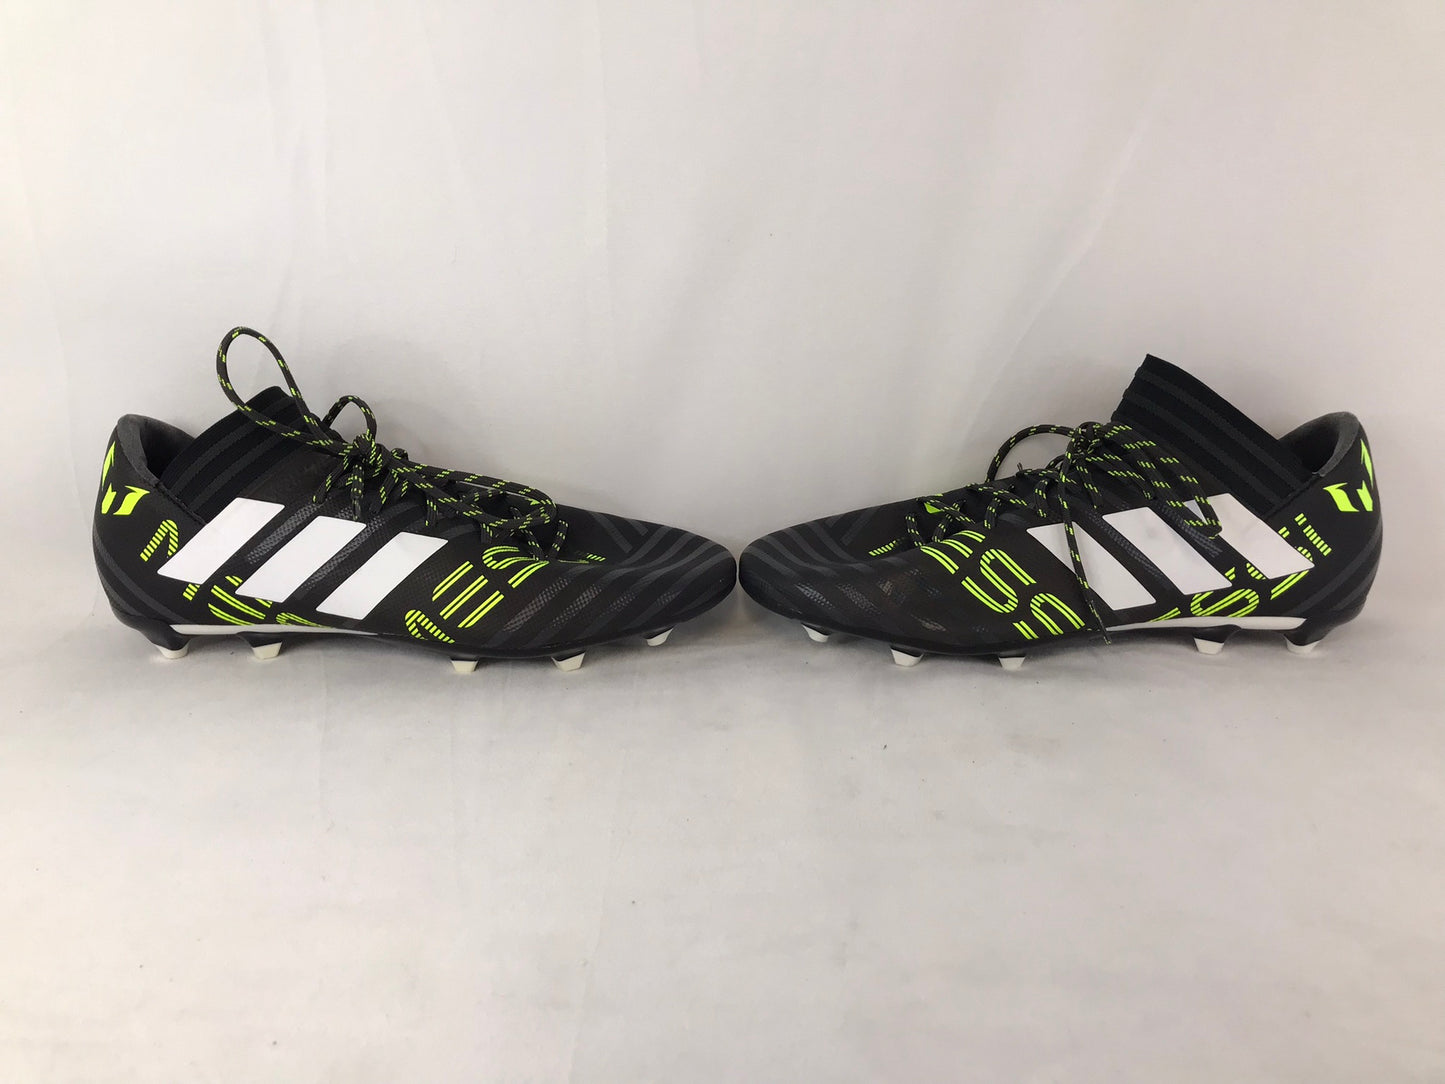 Soccer Shoes Cleats Men's Size 11 Adidas Nemezziz Black White Lime Excellent